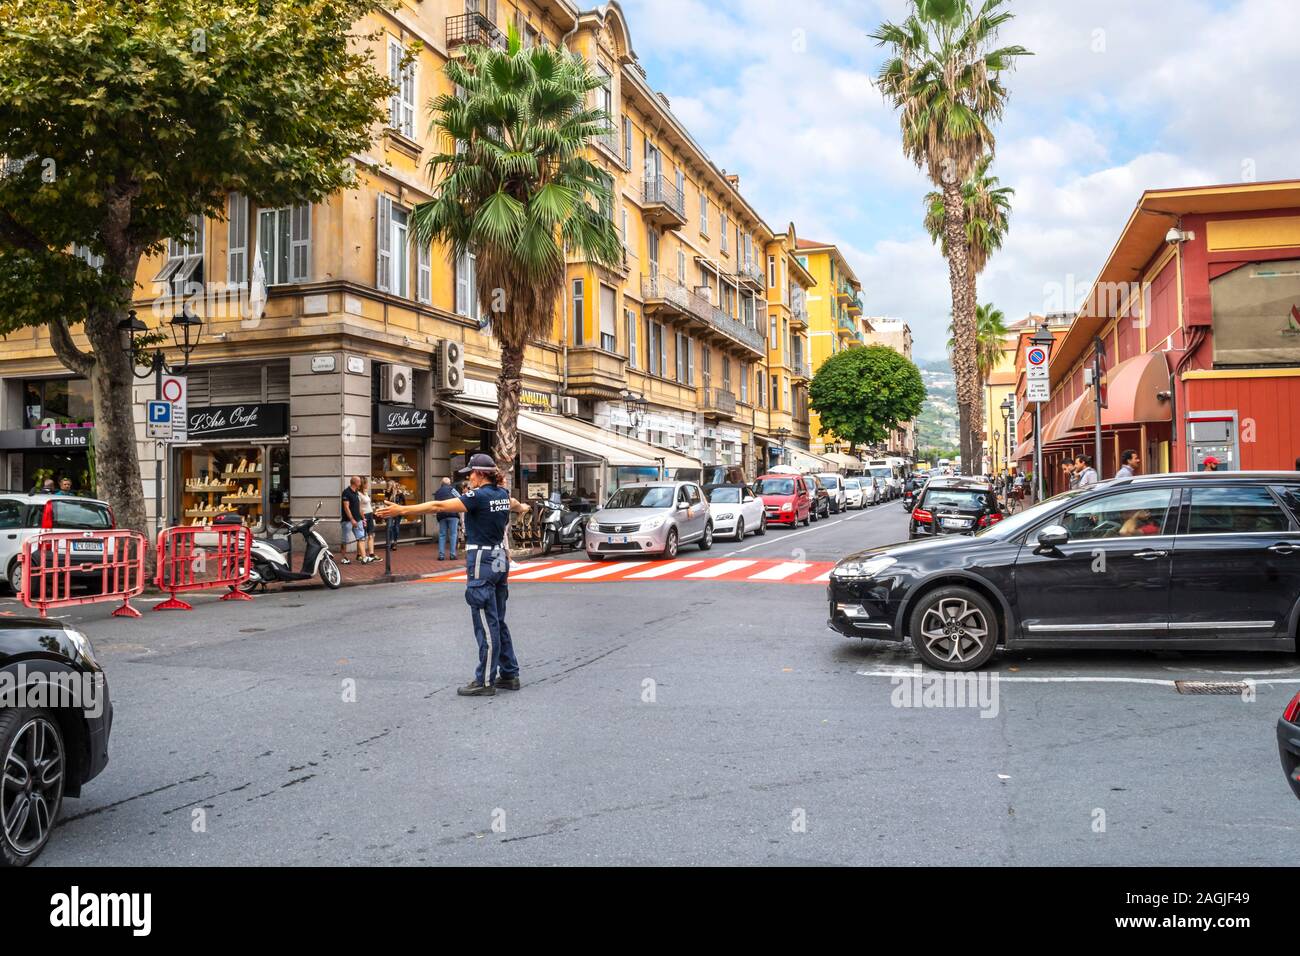 Una femmina la poliziotta dirige il traffico a un rosso e bianco crosswalk nel centro urbano di Ventimiglia, sulla Riviera Italiana. Foto Stock